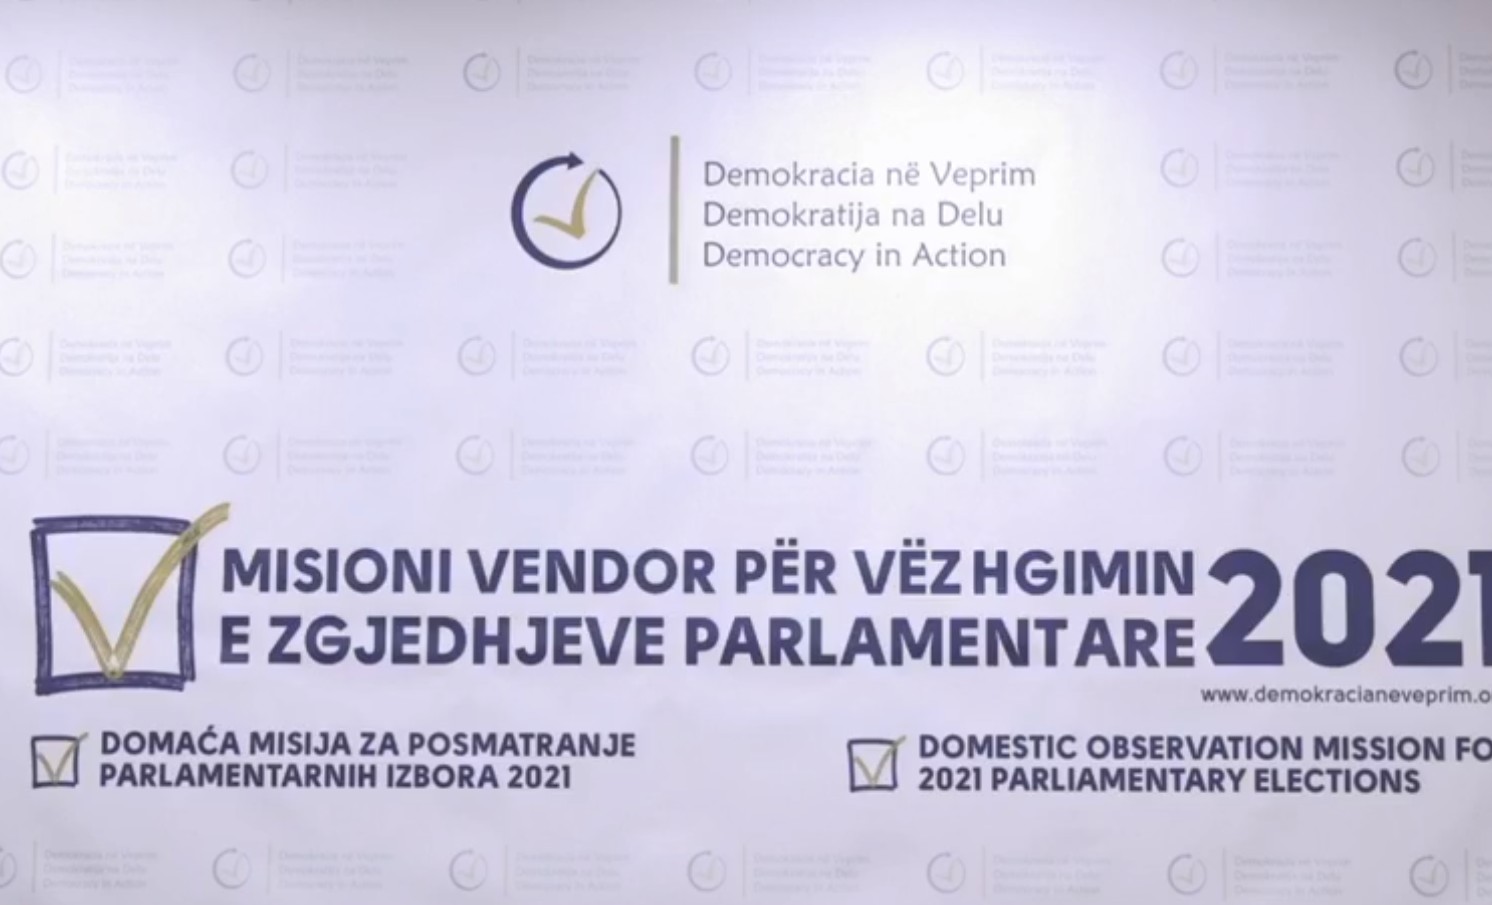 DnV: Ligji rregullon çështjen për certifikimin e kandidatëve, partitë t’i respektojnë procedurat